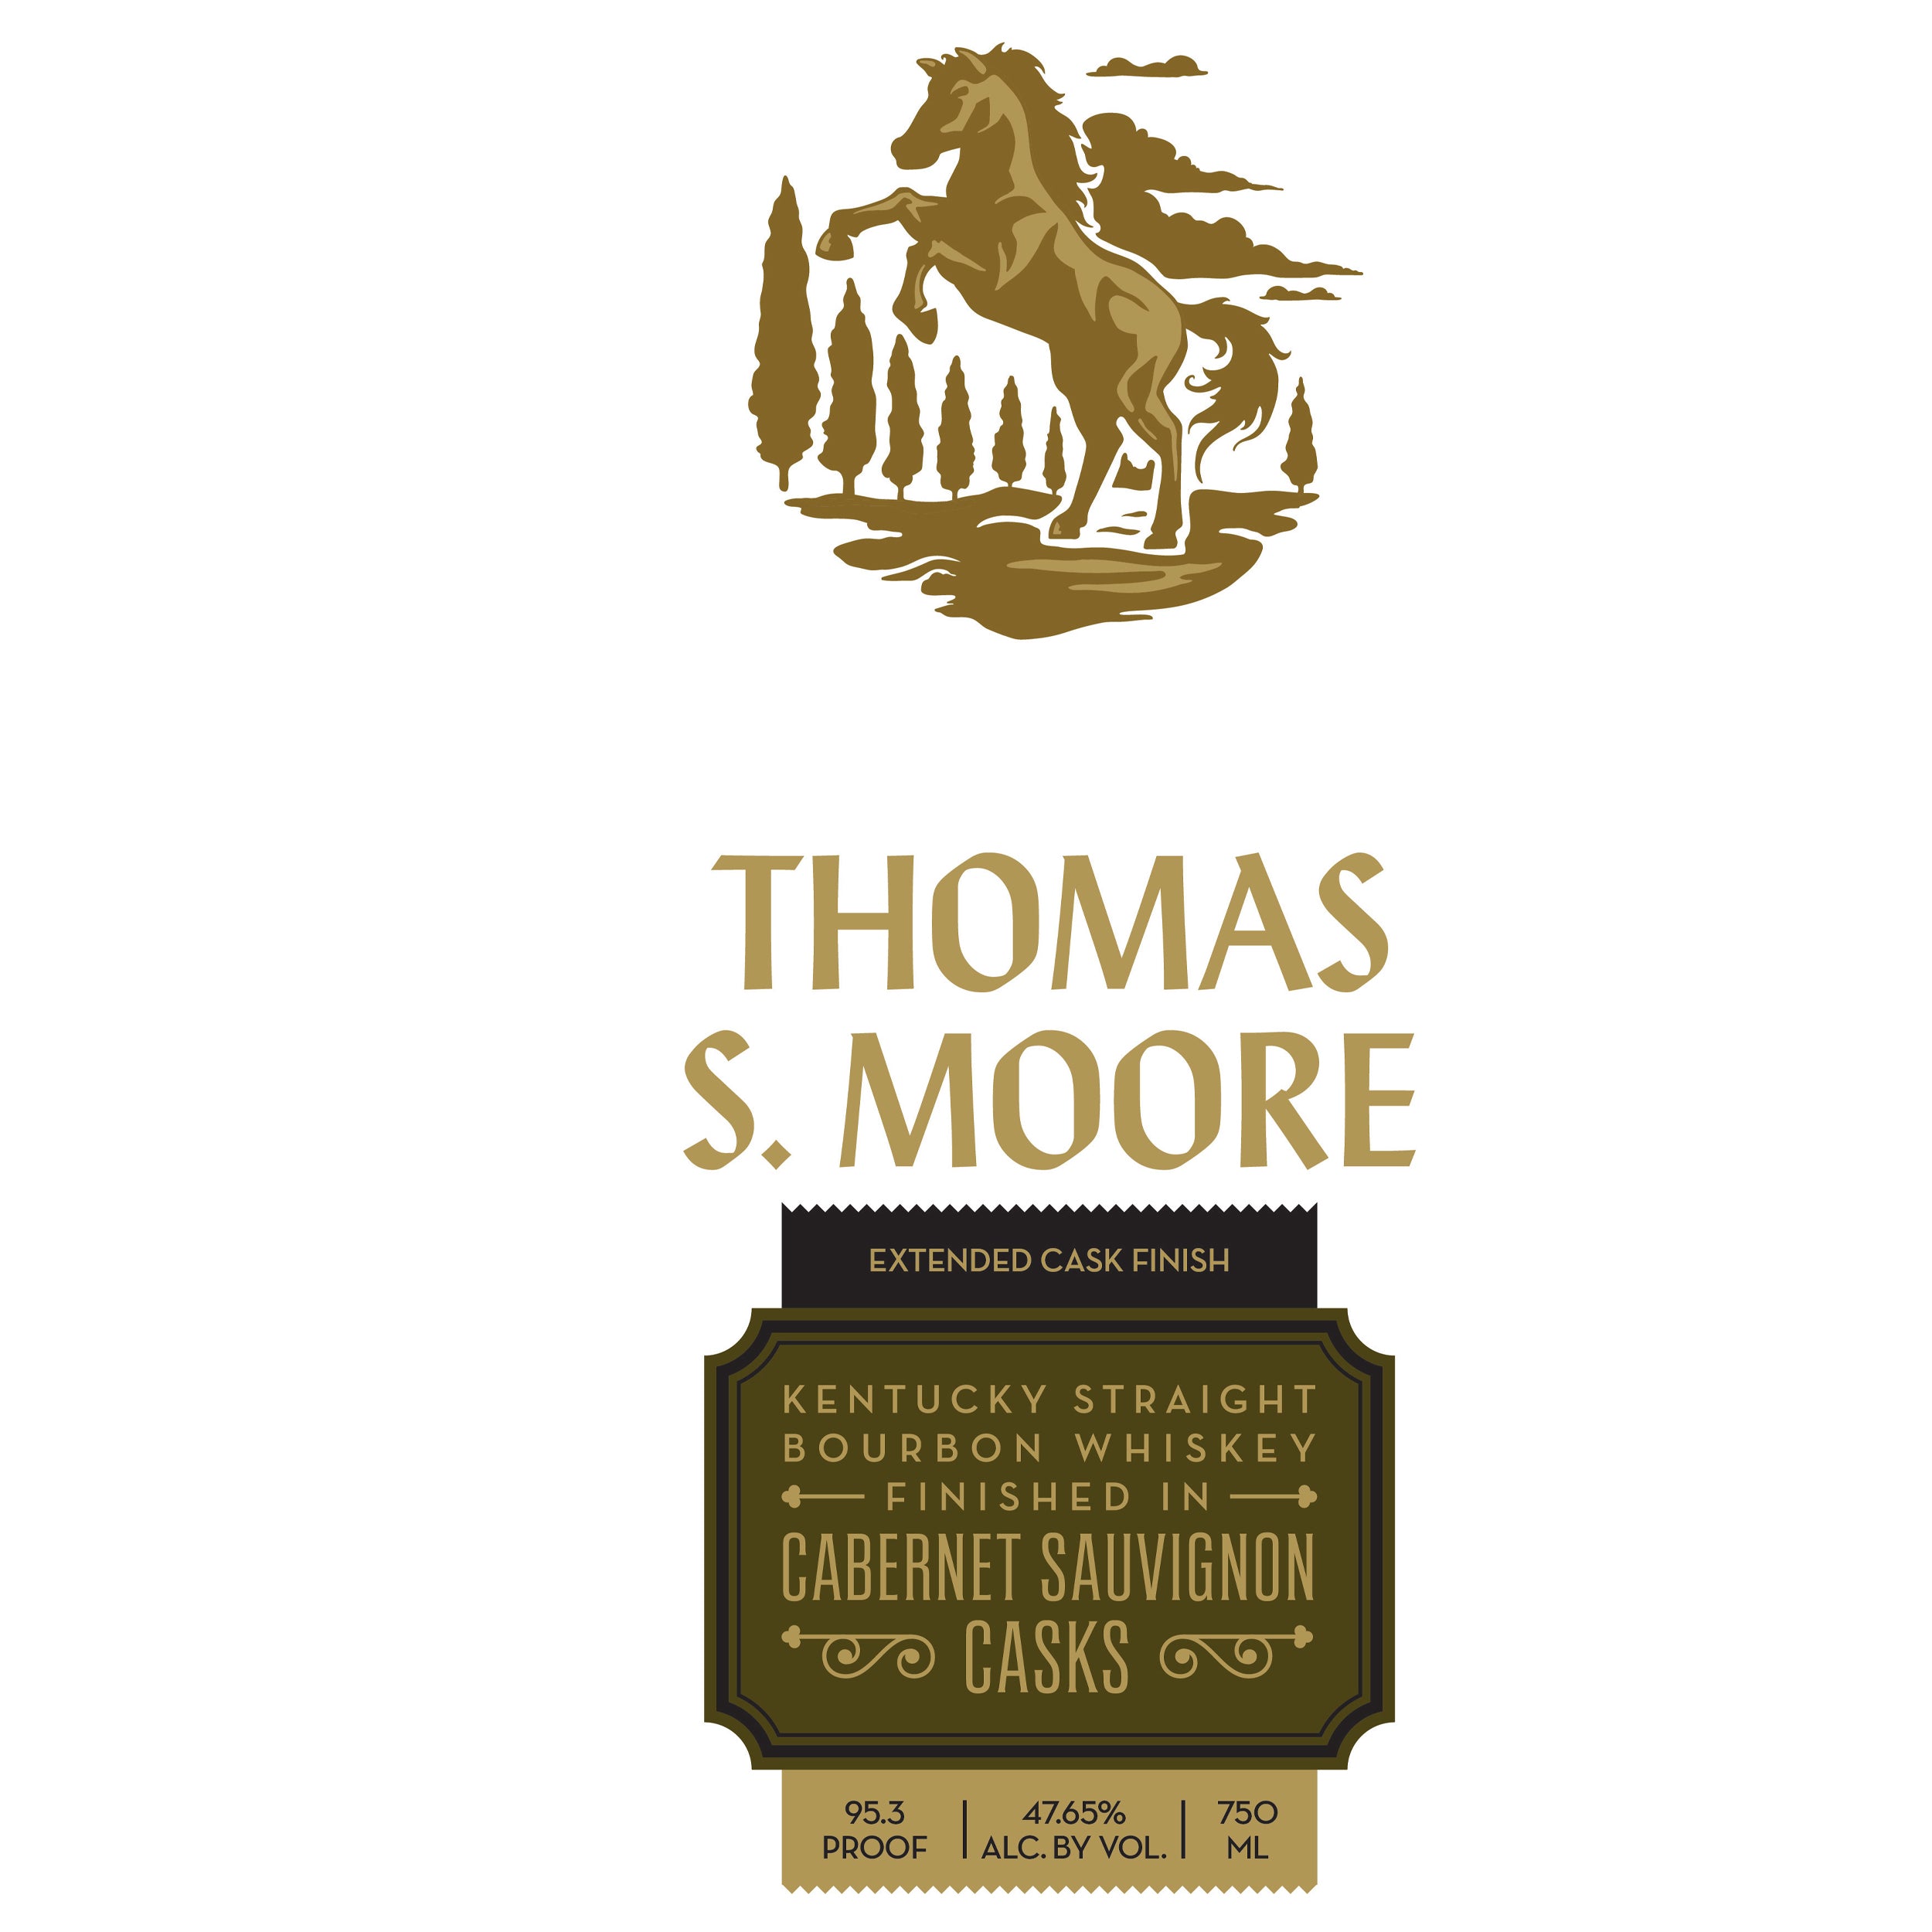 Thomas S. Moore Cabernet Finish Bourbon Whiskey